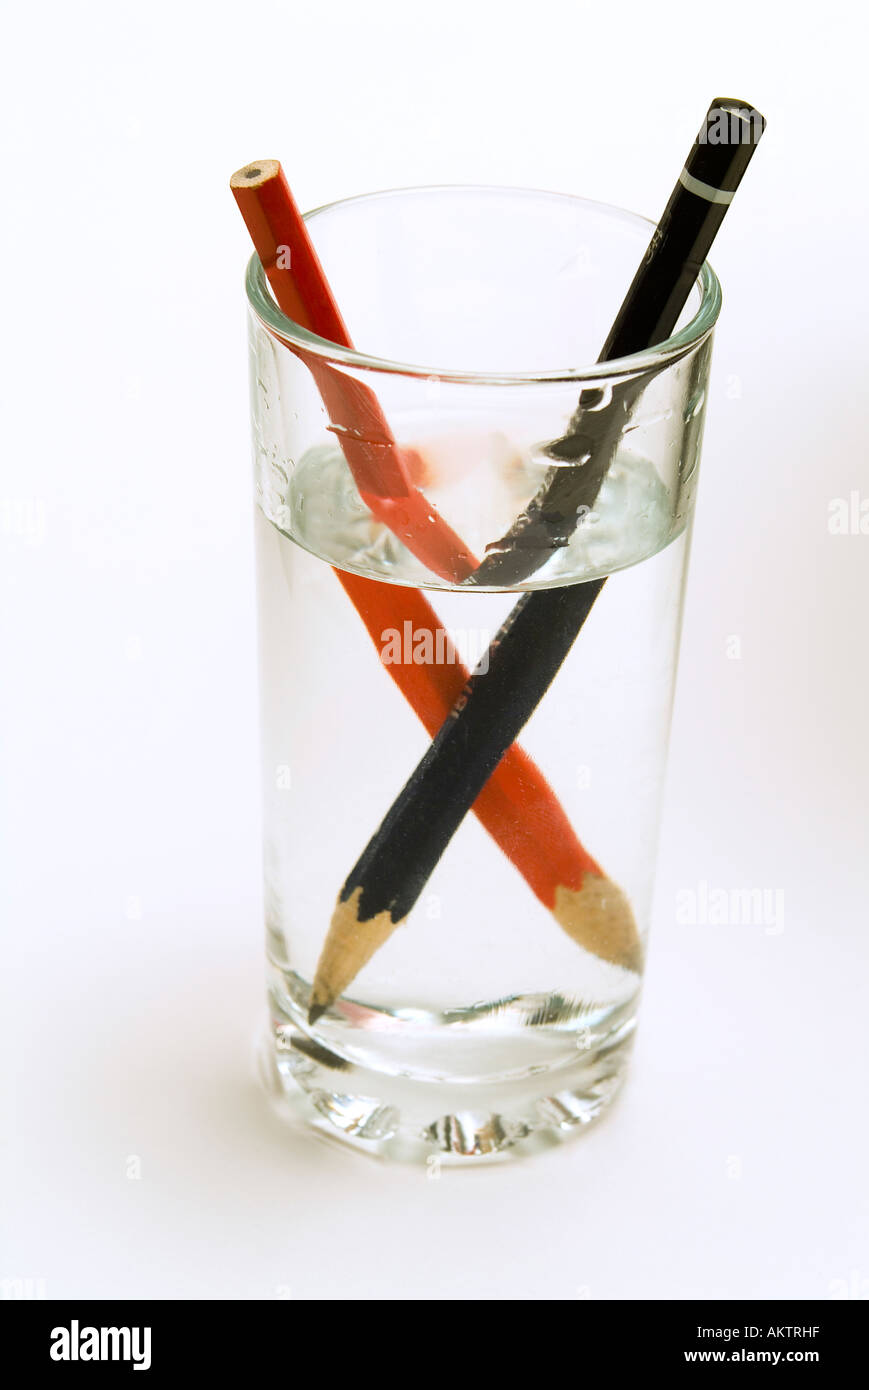 Deux crayons dans un verre d'eau, montrant le distoprtion optique causé par  la réfraction de l'image Photo Stock - Alamy